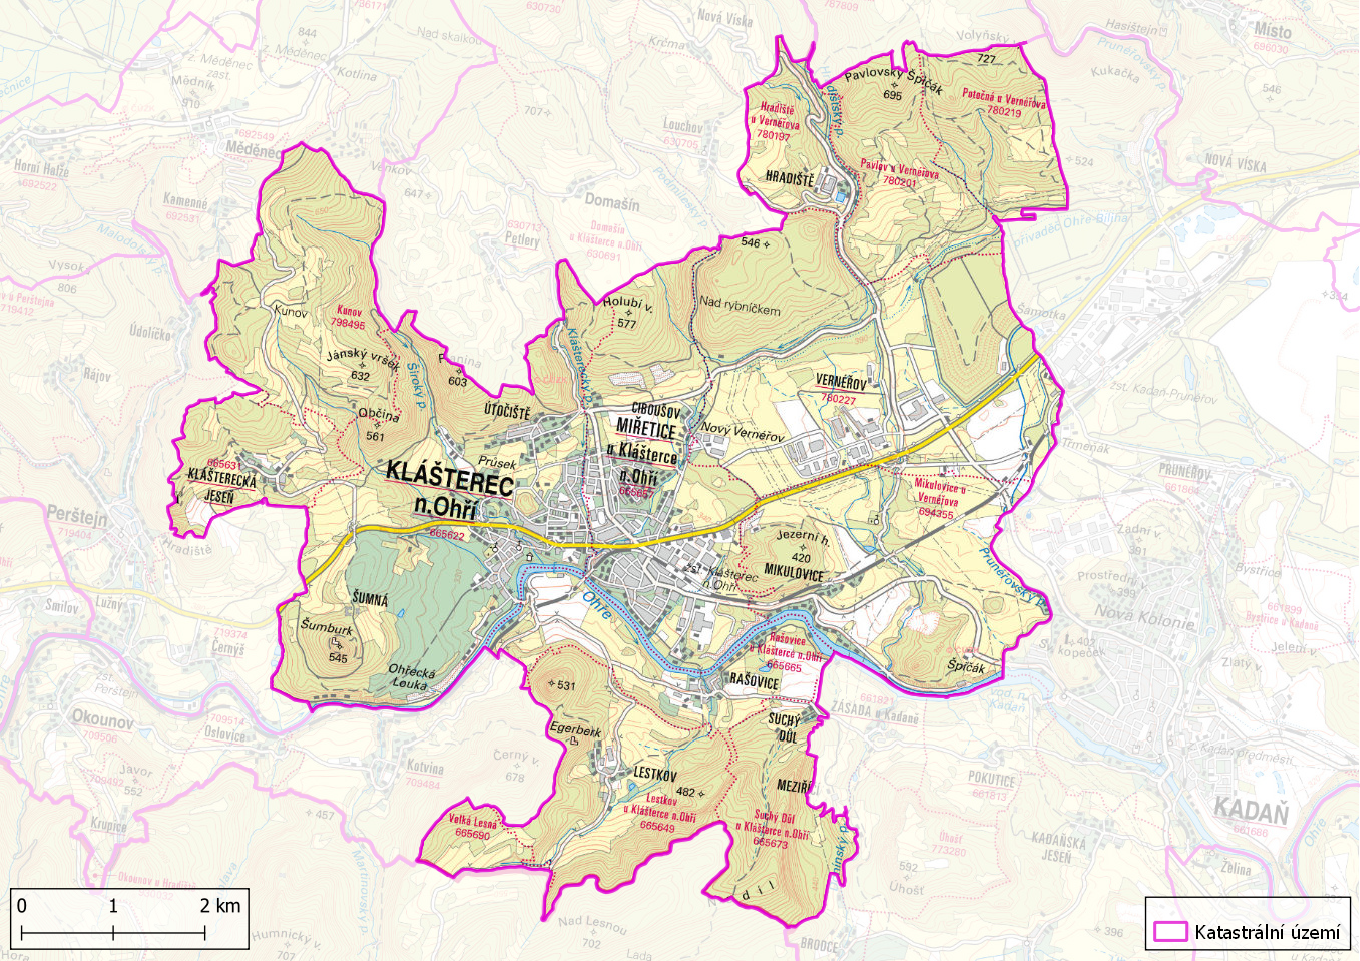 Katastrální území města Klášterec nad Ohří